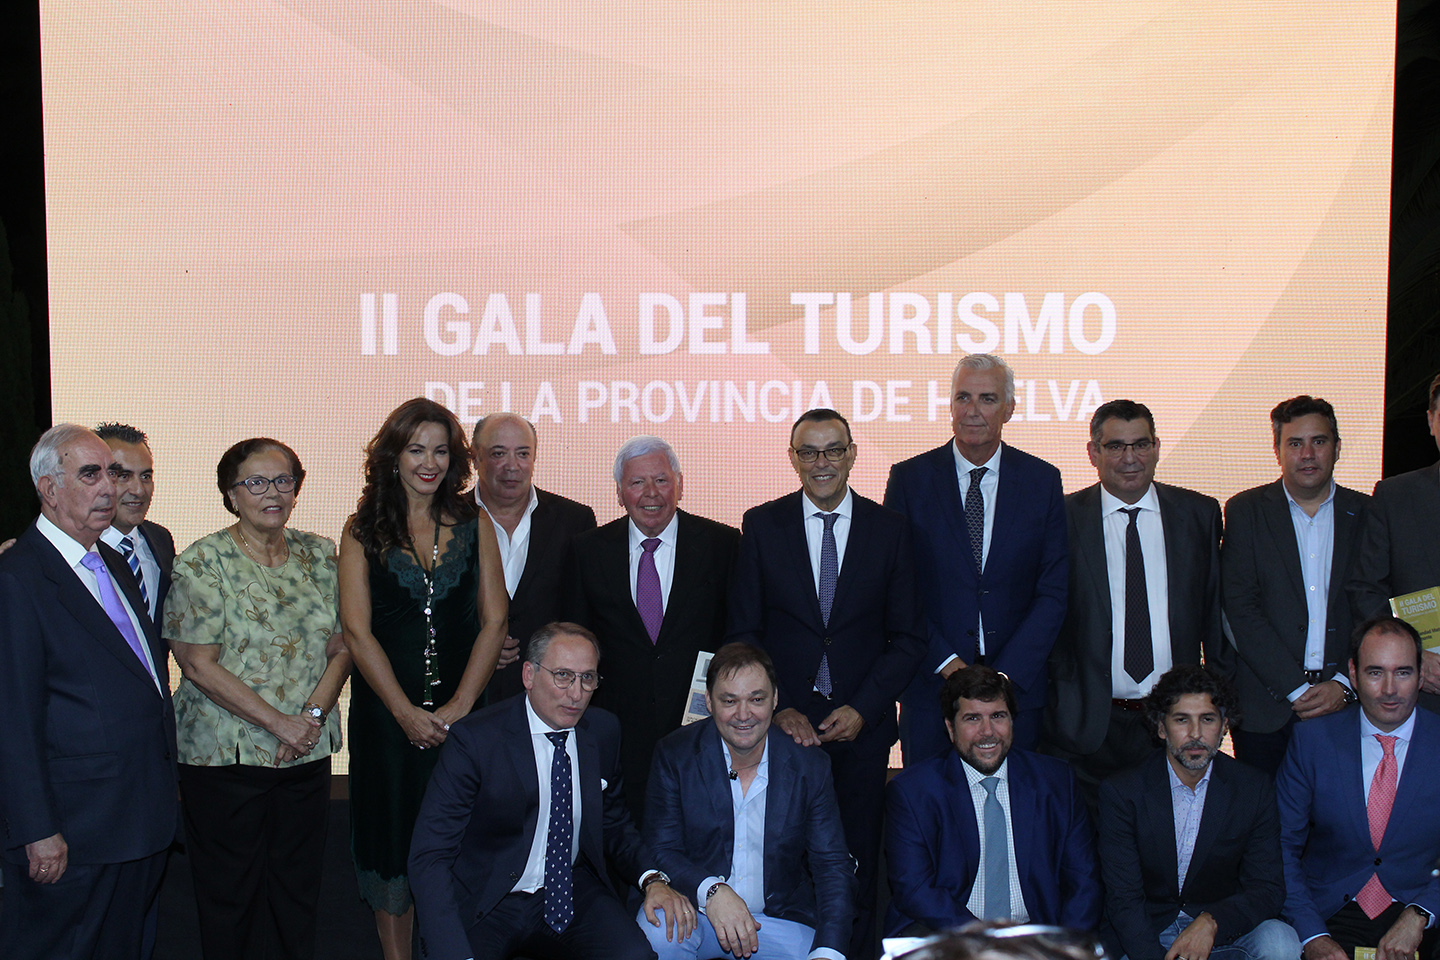 La II Gala del Turismo de la provincia de Huelva reconoce a los protagonistas del sector